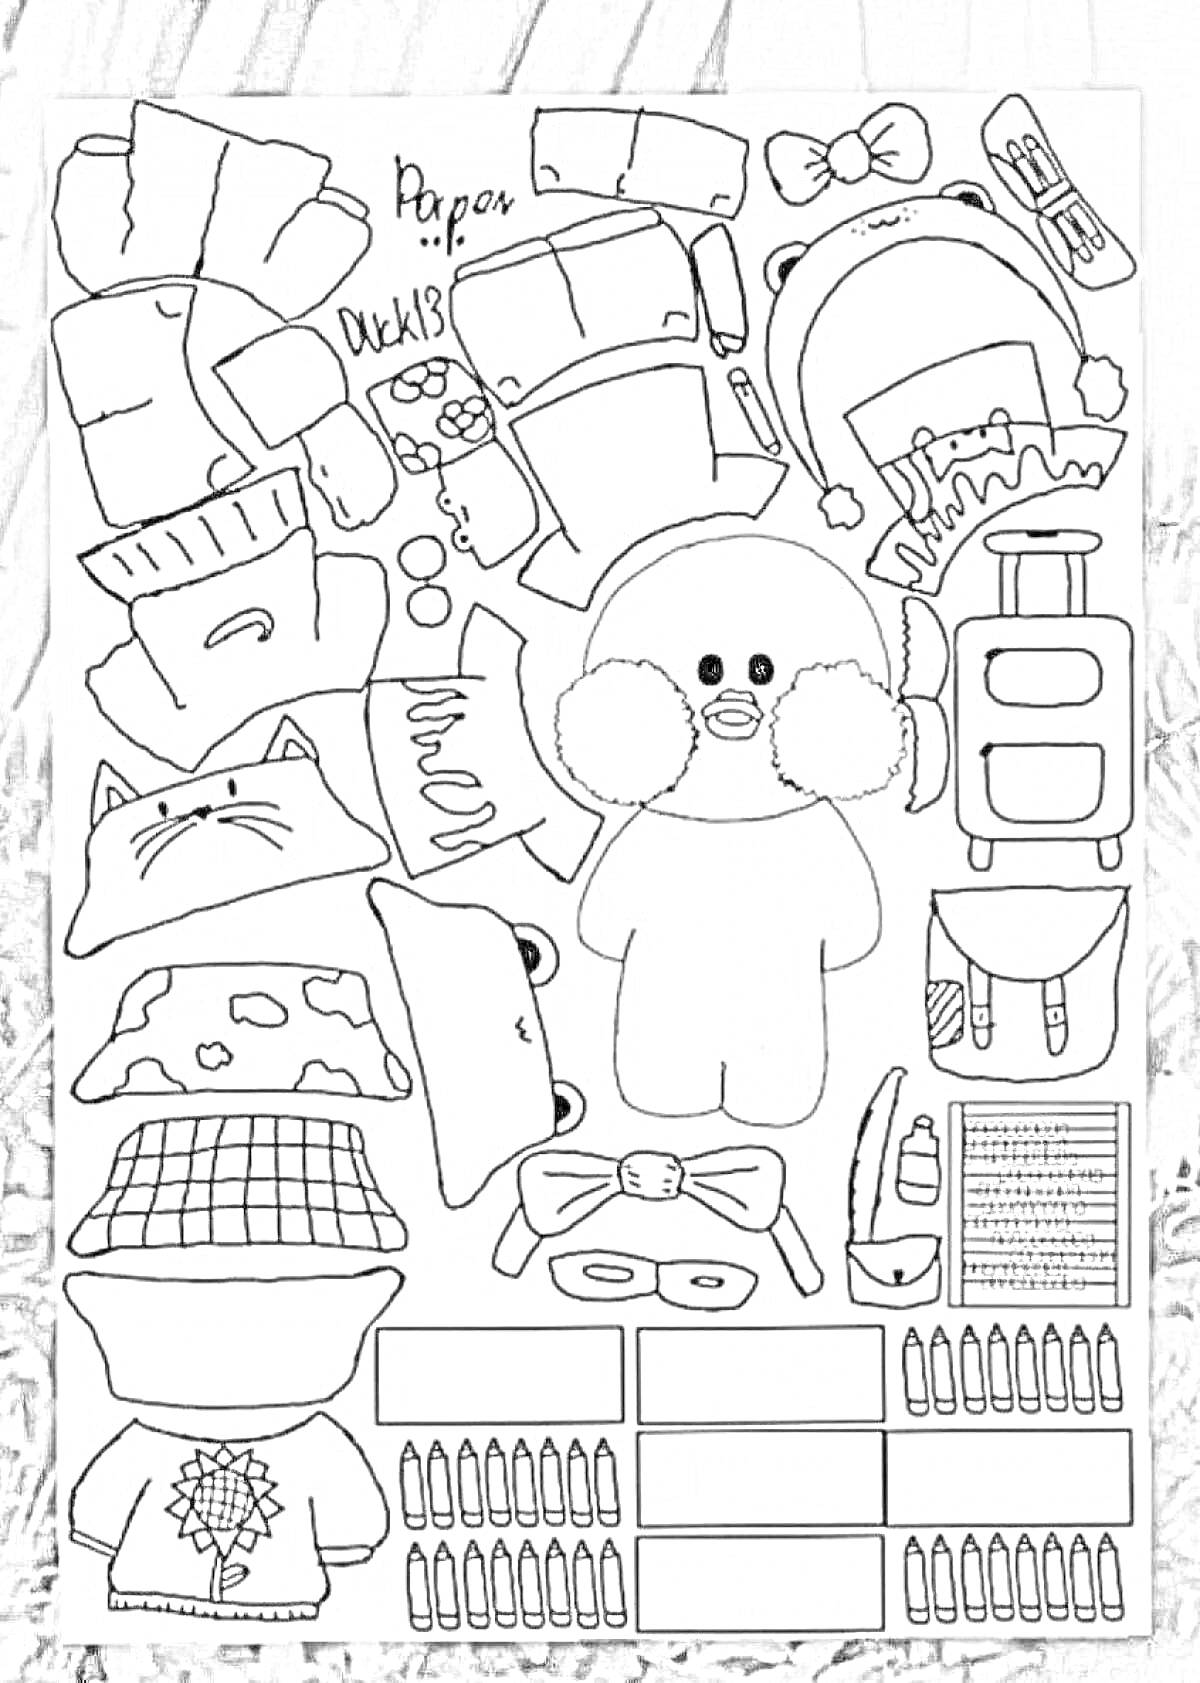 Раскраска уточка лалафанфан с одеждой и едой, кукла, шапка медведя, рюкзак, куртка, штаны, шляпа, очки, сумка, косметика, пицца, пирожное, хлеб, помада